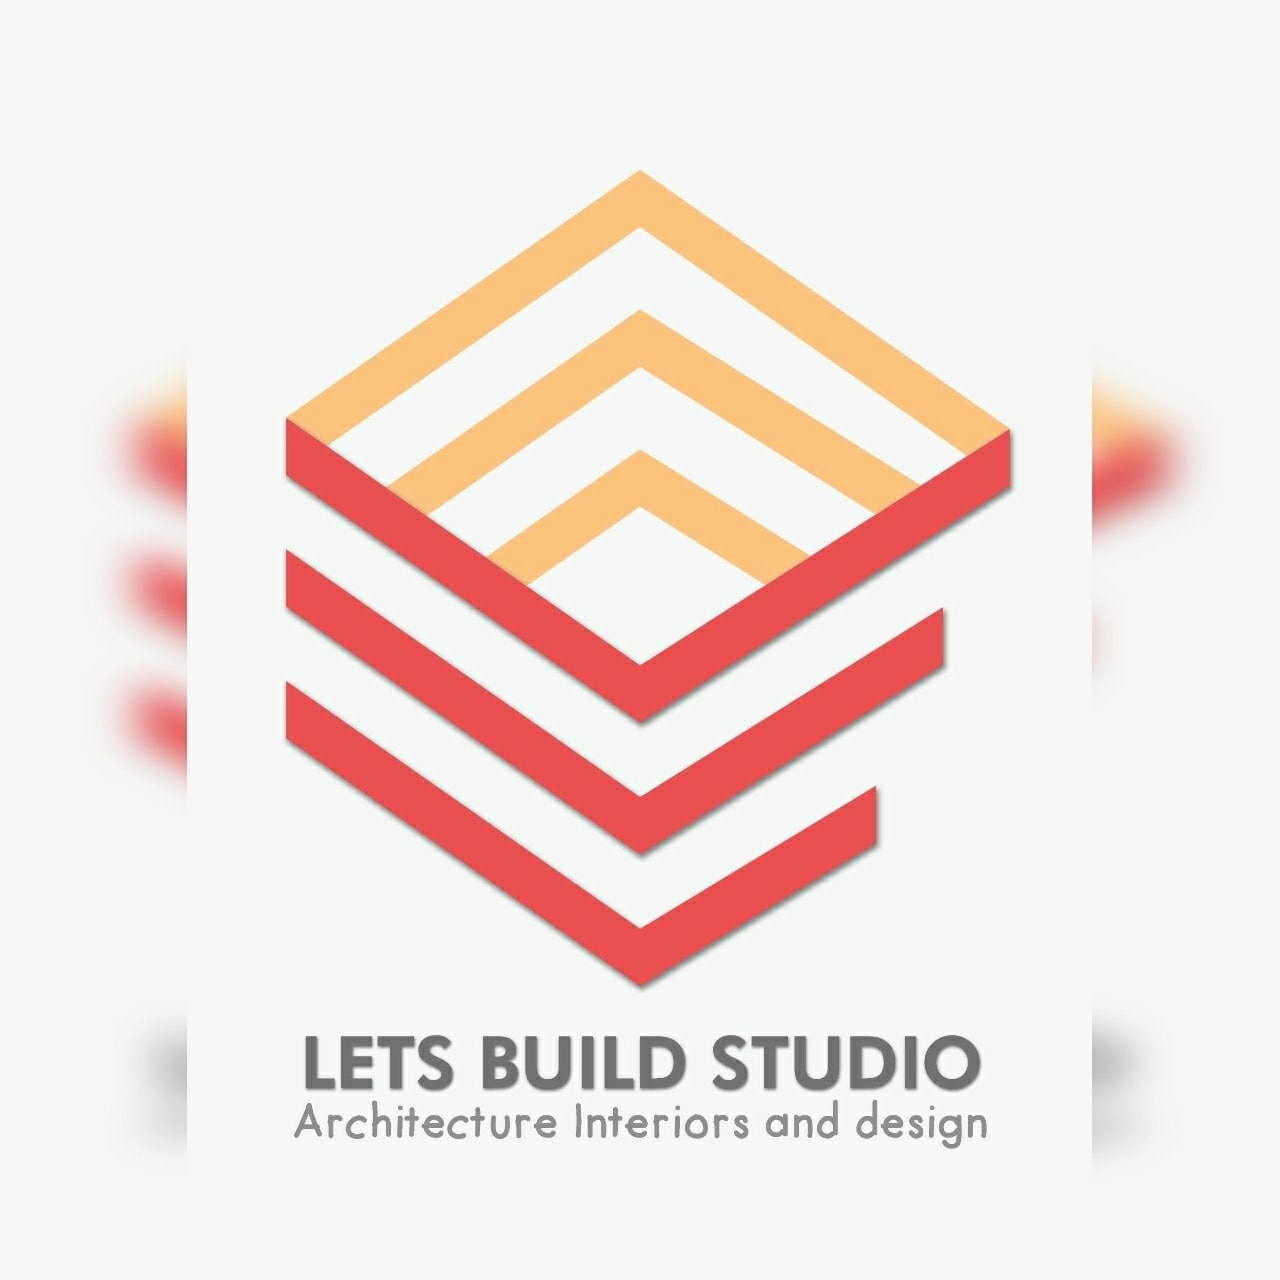 Lets Build studio|IT Services|Professional Services